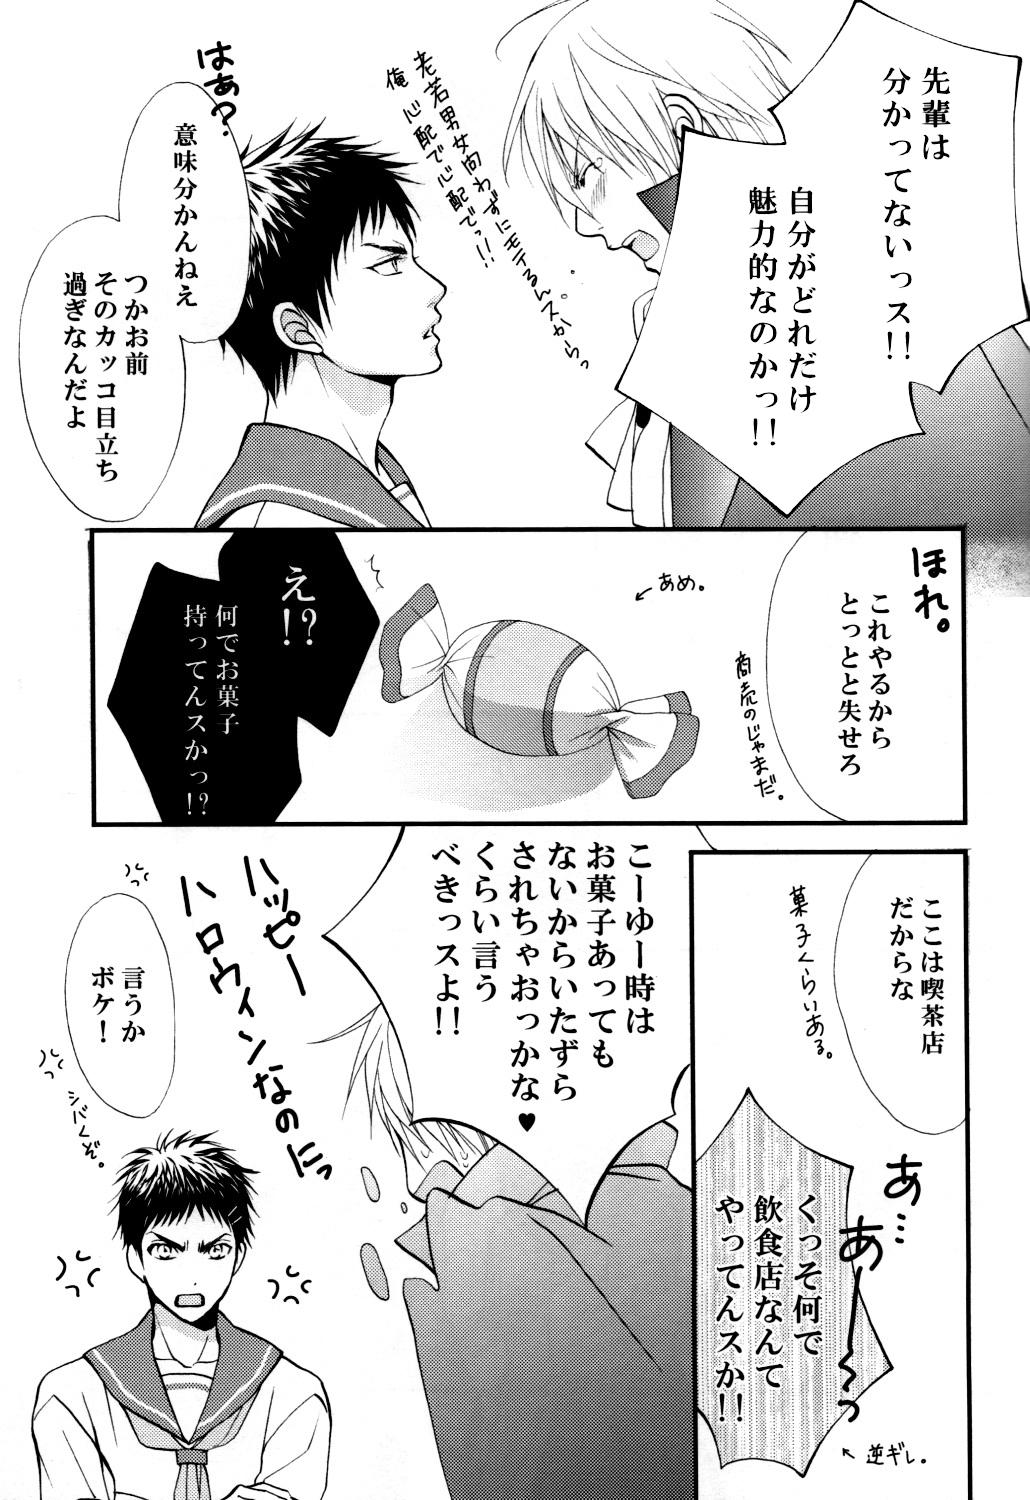 Slapping Itazura Shitemo Iissuka? - Kuroko no basuke Male - Page 12